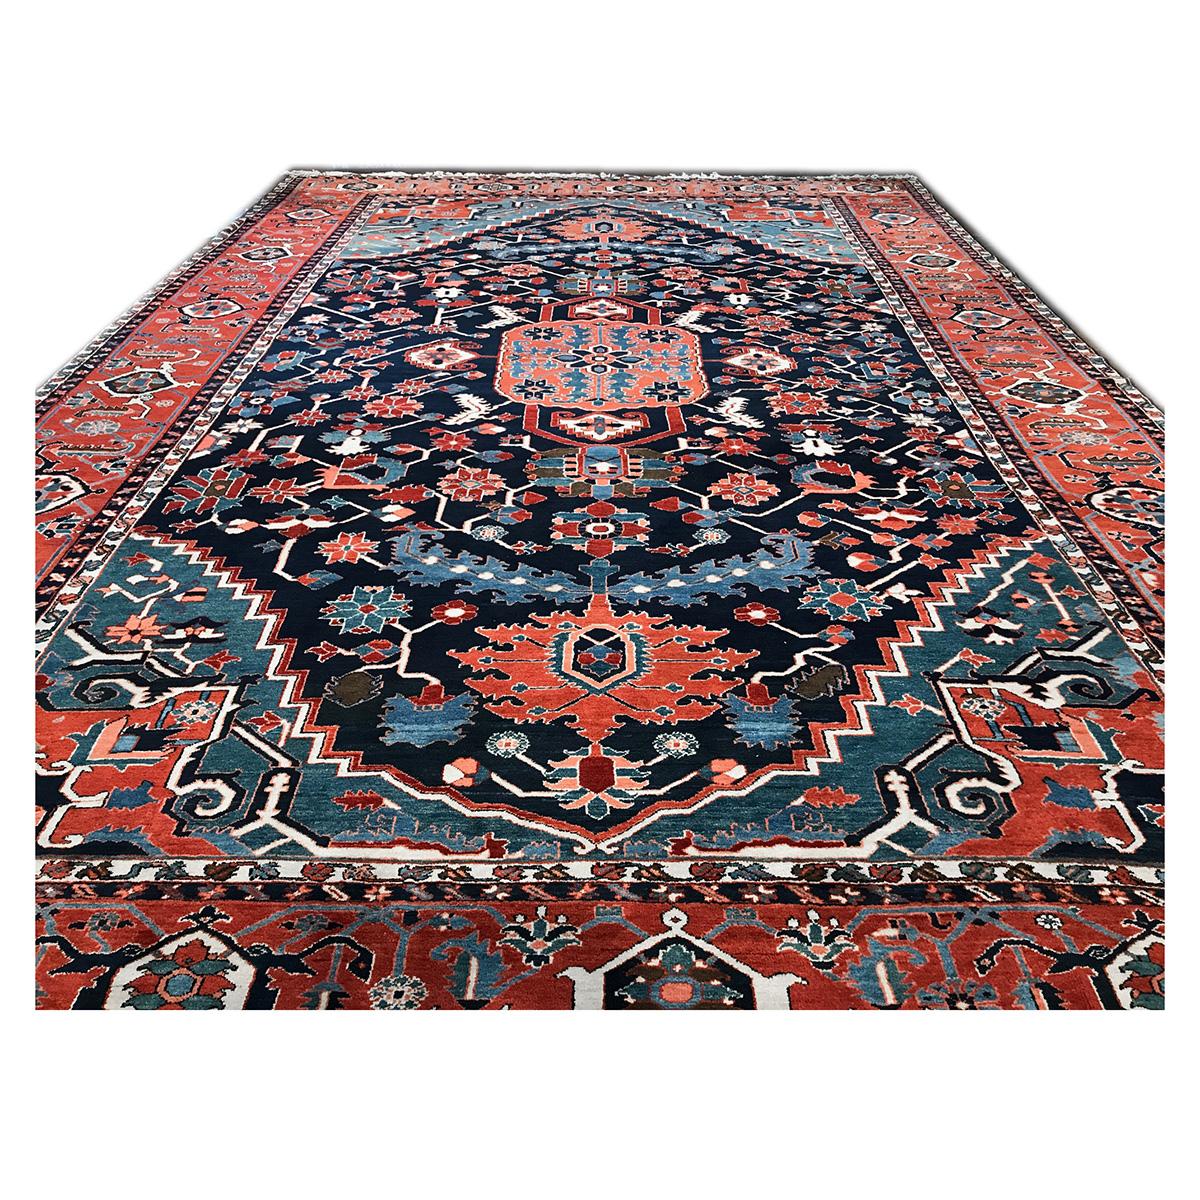 Ashly Fine Rugs präsentiert einen originalen persischen Serapi-Teppich im Palastformat. Diese antike Nachbildung stammt aus unserer eigenen früheren Produktion und wurde von unseren Webermeistern in Persien von Hand gefertigt. Persische